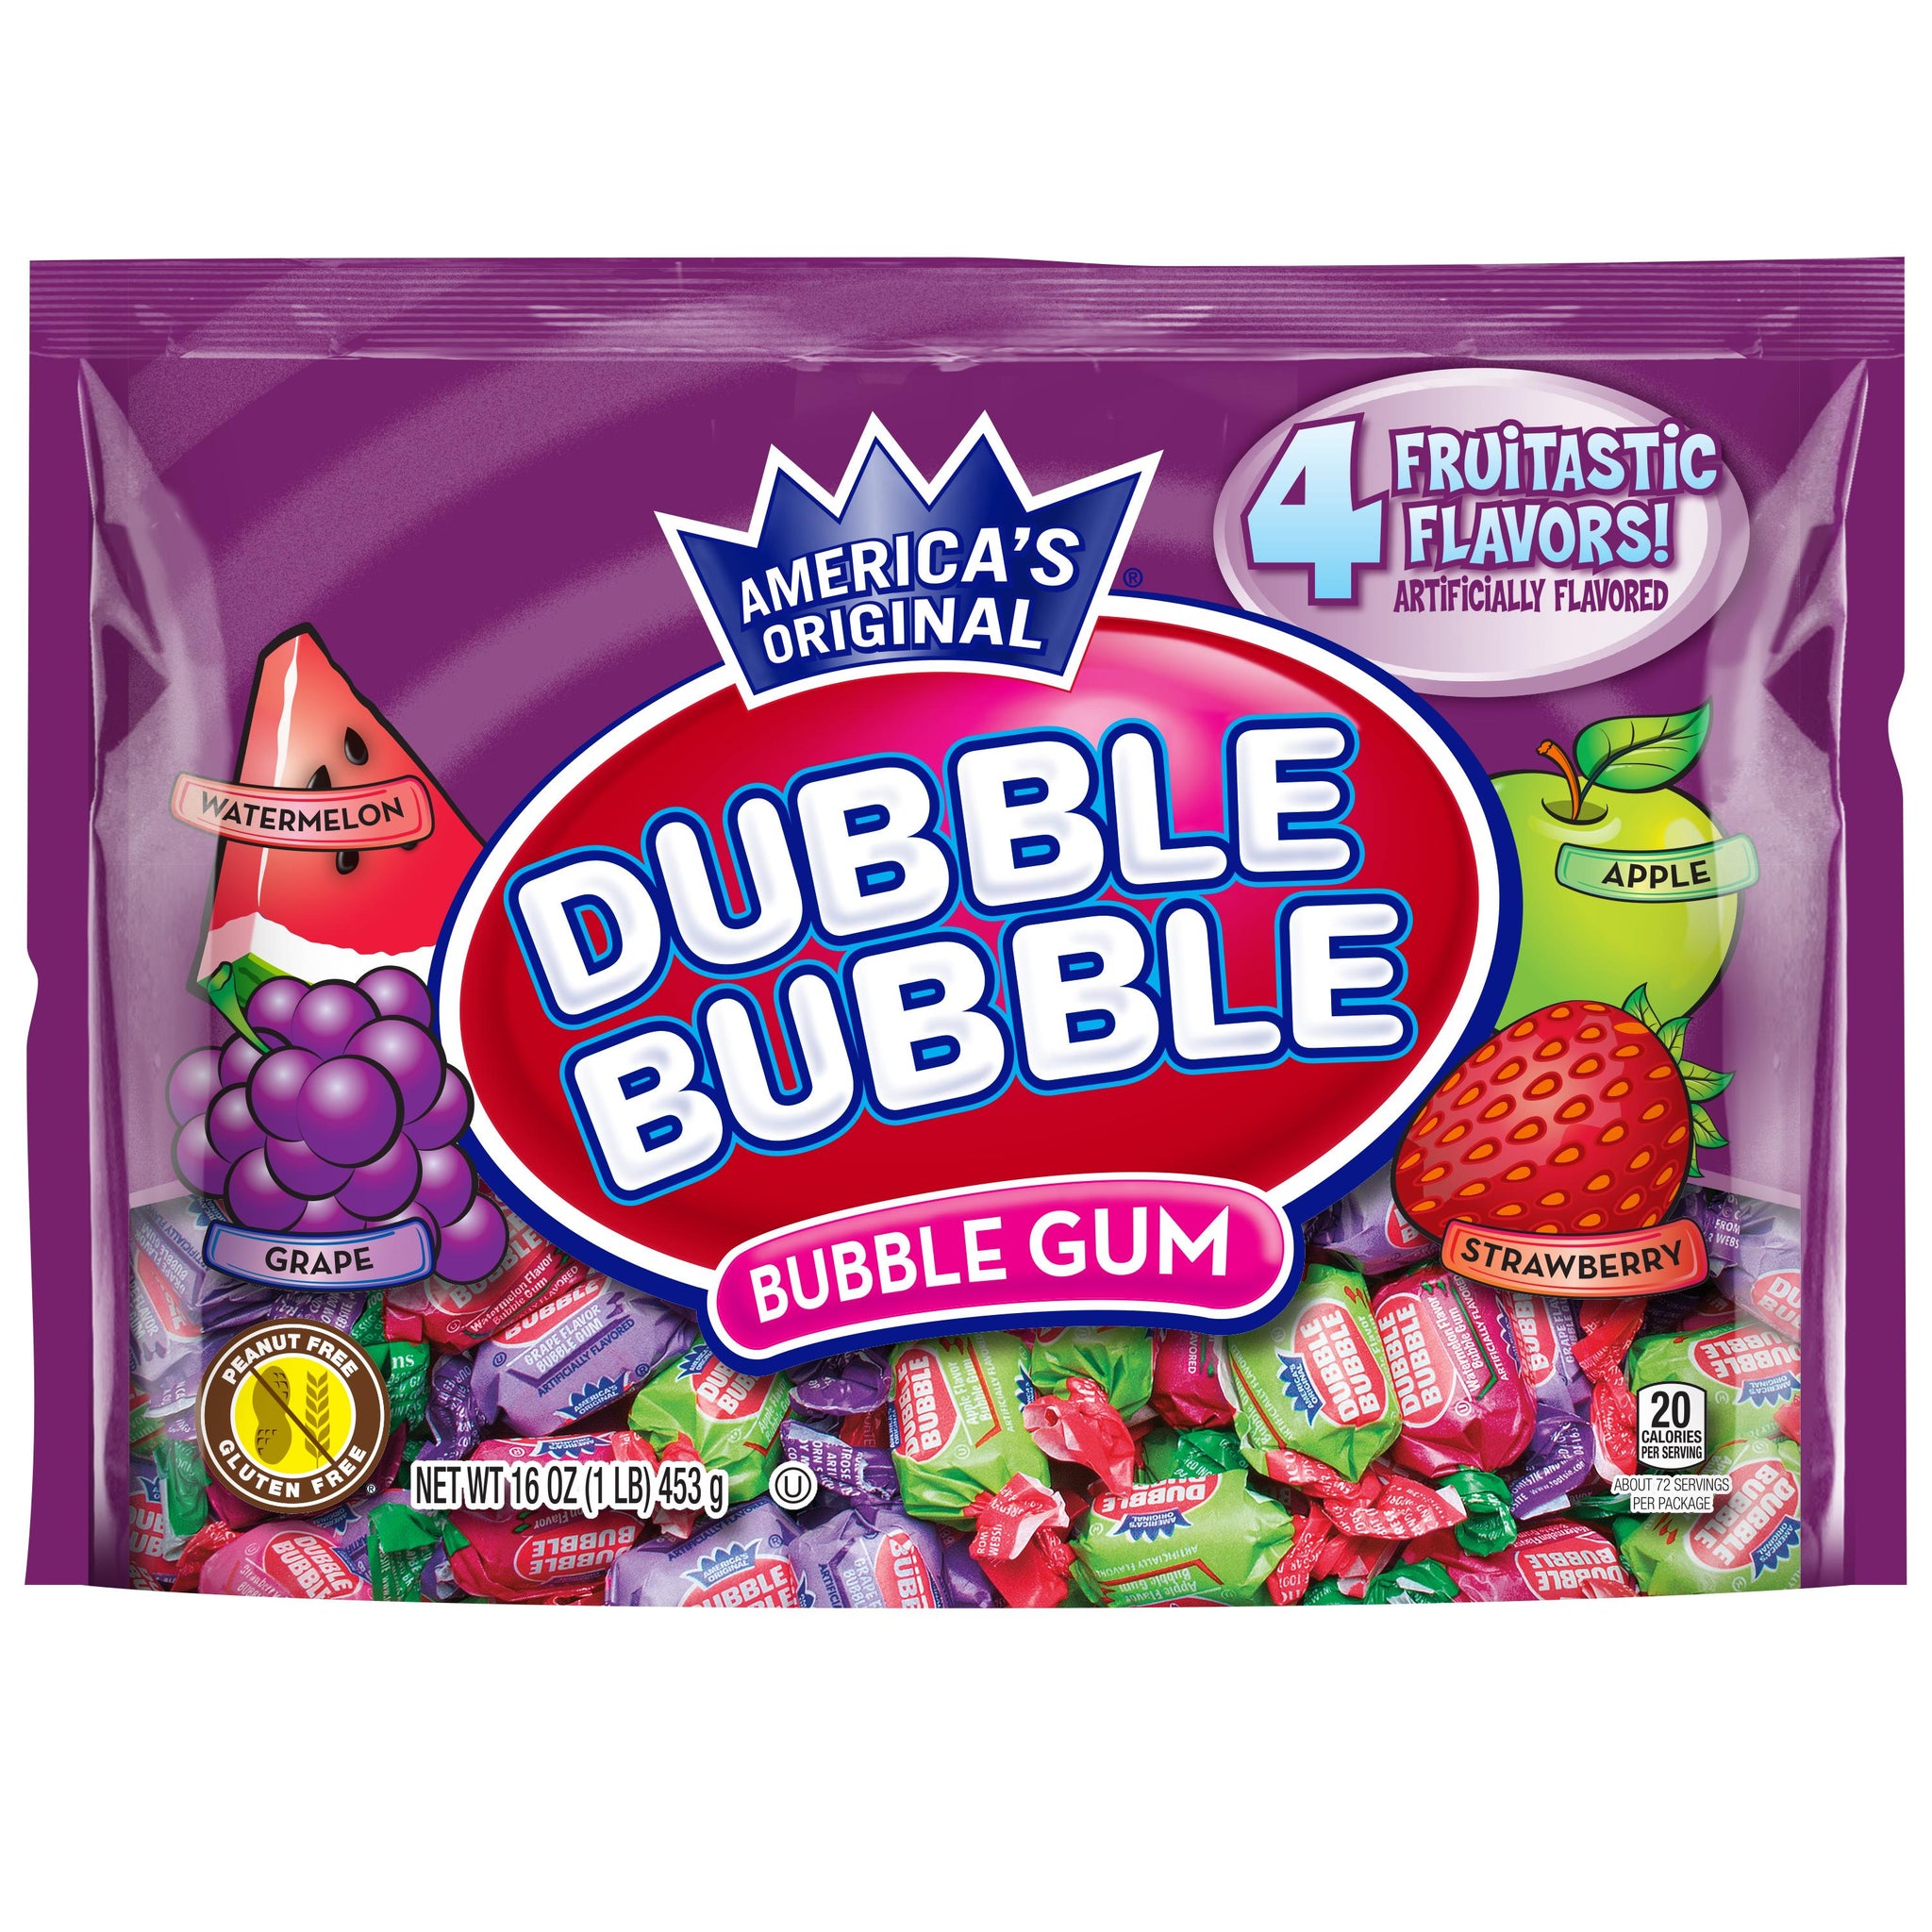 Dubble Bubble, Bubble Gum, 4 Flavors, 16oz